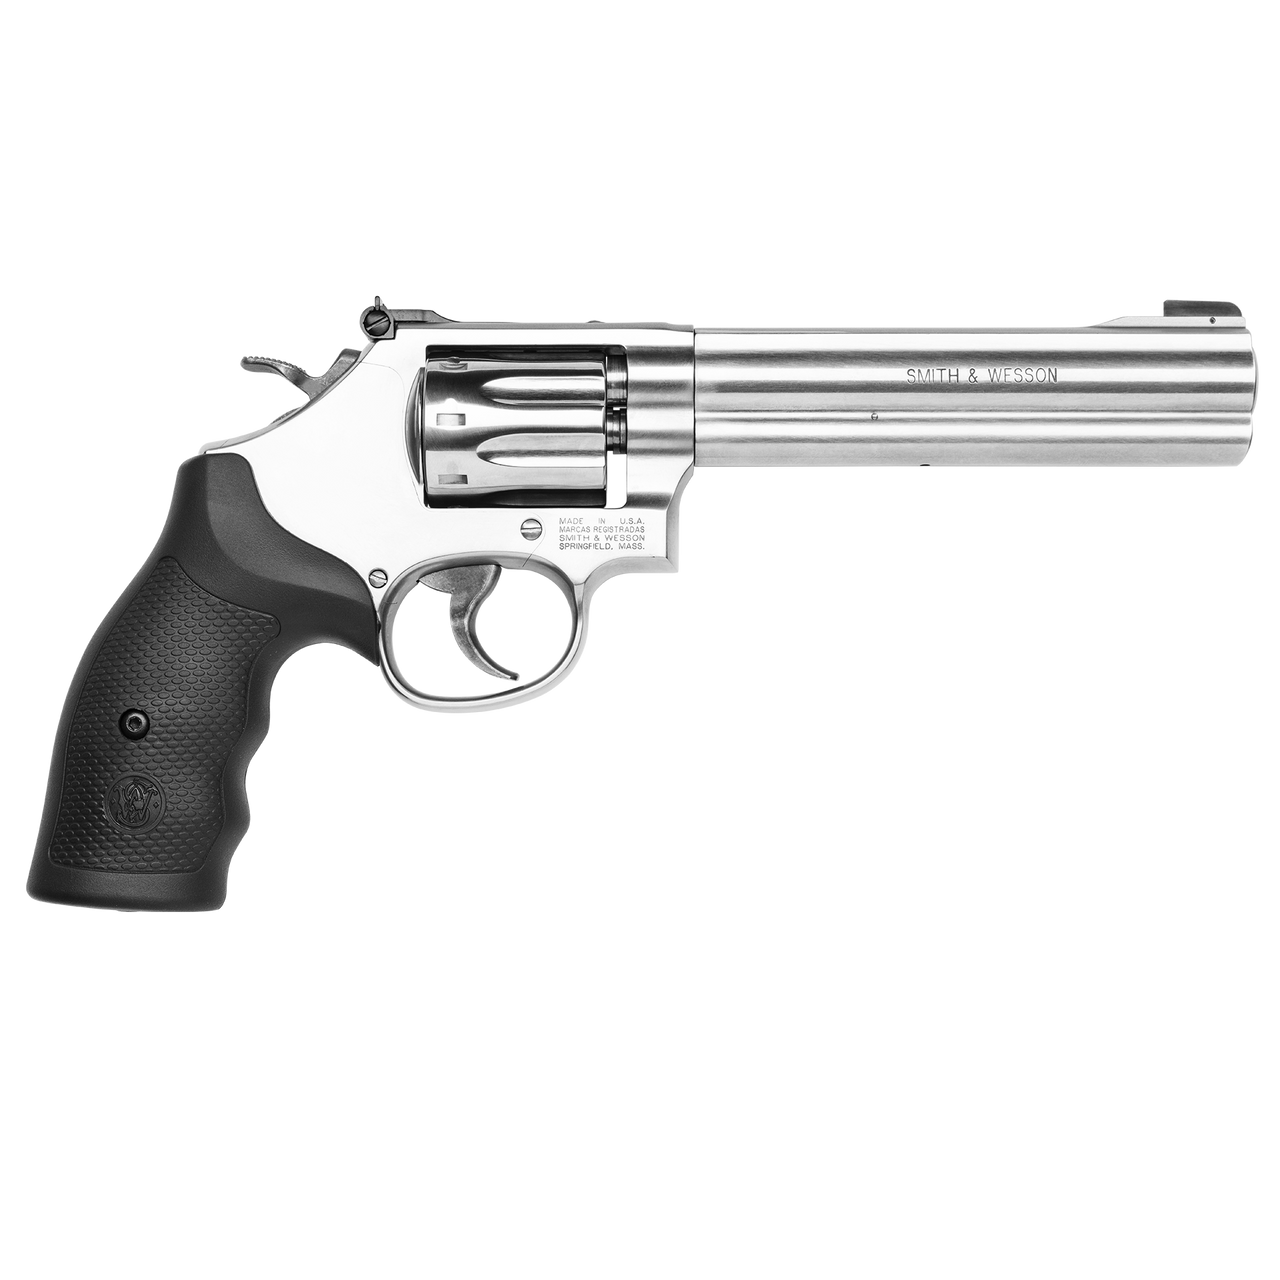 S&W Model 648 22Magnum 6” Barrel Revolver – SKU 12460 – 8 RD Capacity